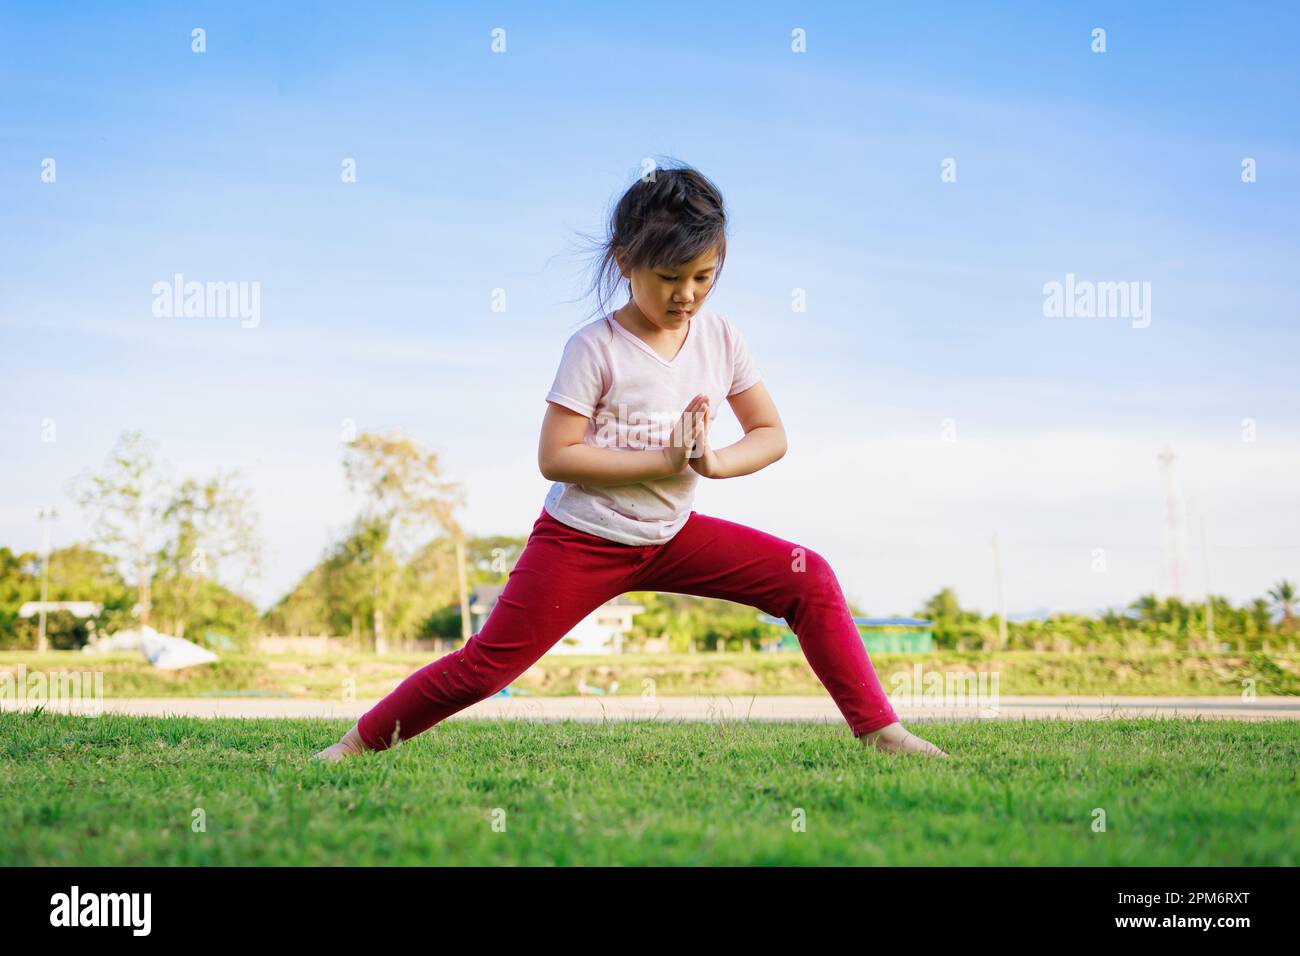 Kindermeditation mit Yoga-Pose auf grünem Grasfeld. Aktivitäten im Freien für Kinder, Yoga-Übungen, Kinder können lernen, wie man trainiert. Stockfoto